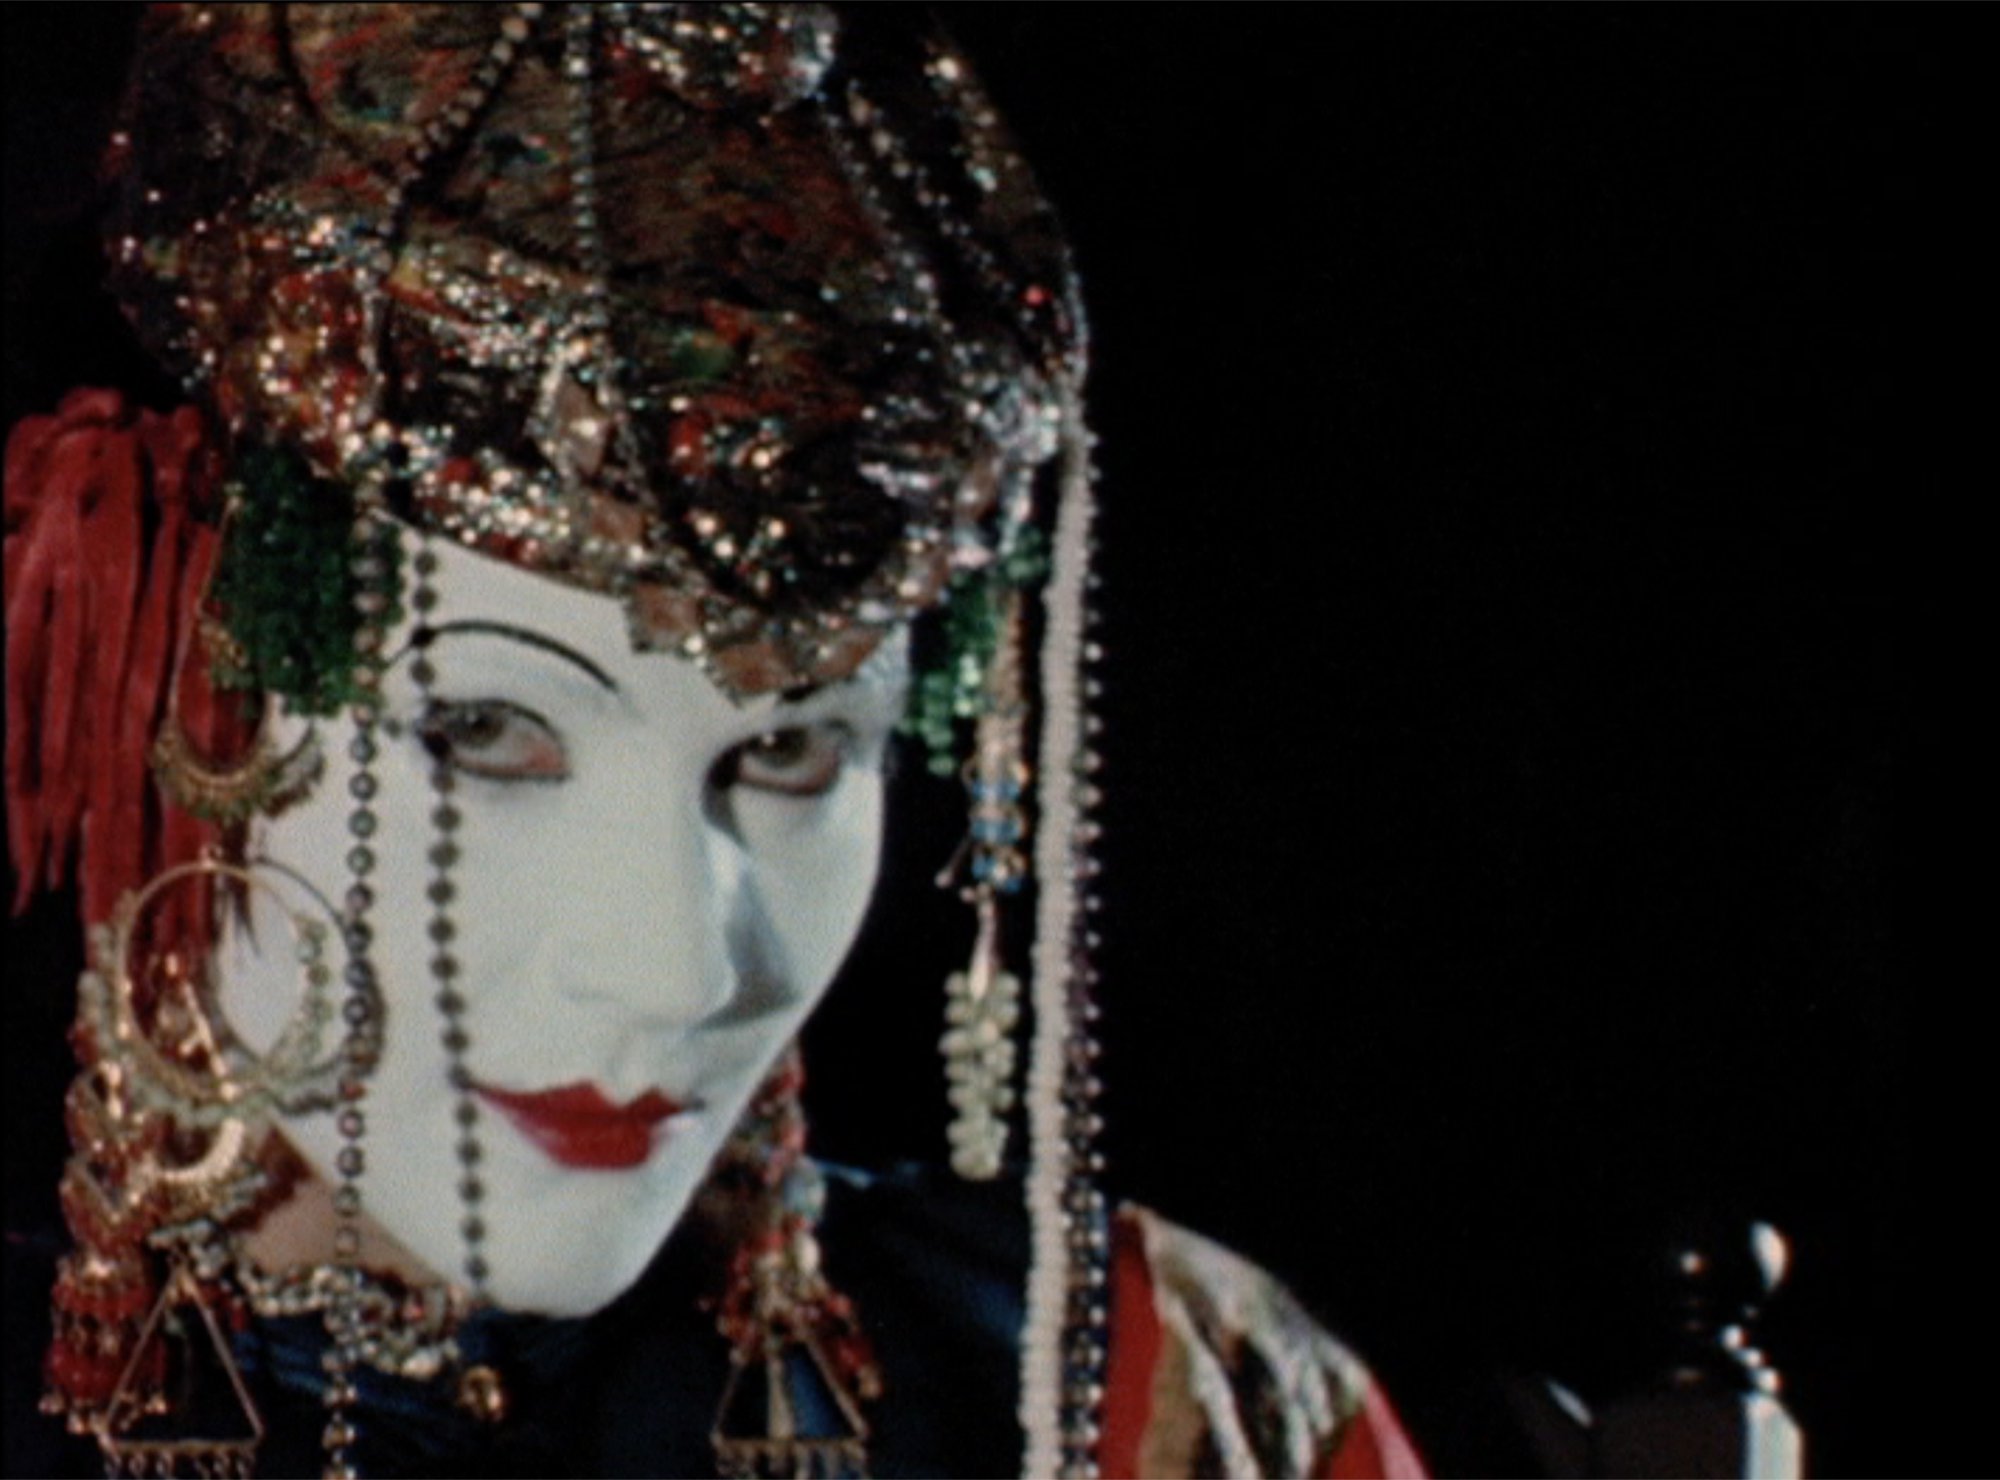 Leslie Thornton, Adynata, still, 16 mm film on video, 28 min. 49 sec., 1983